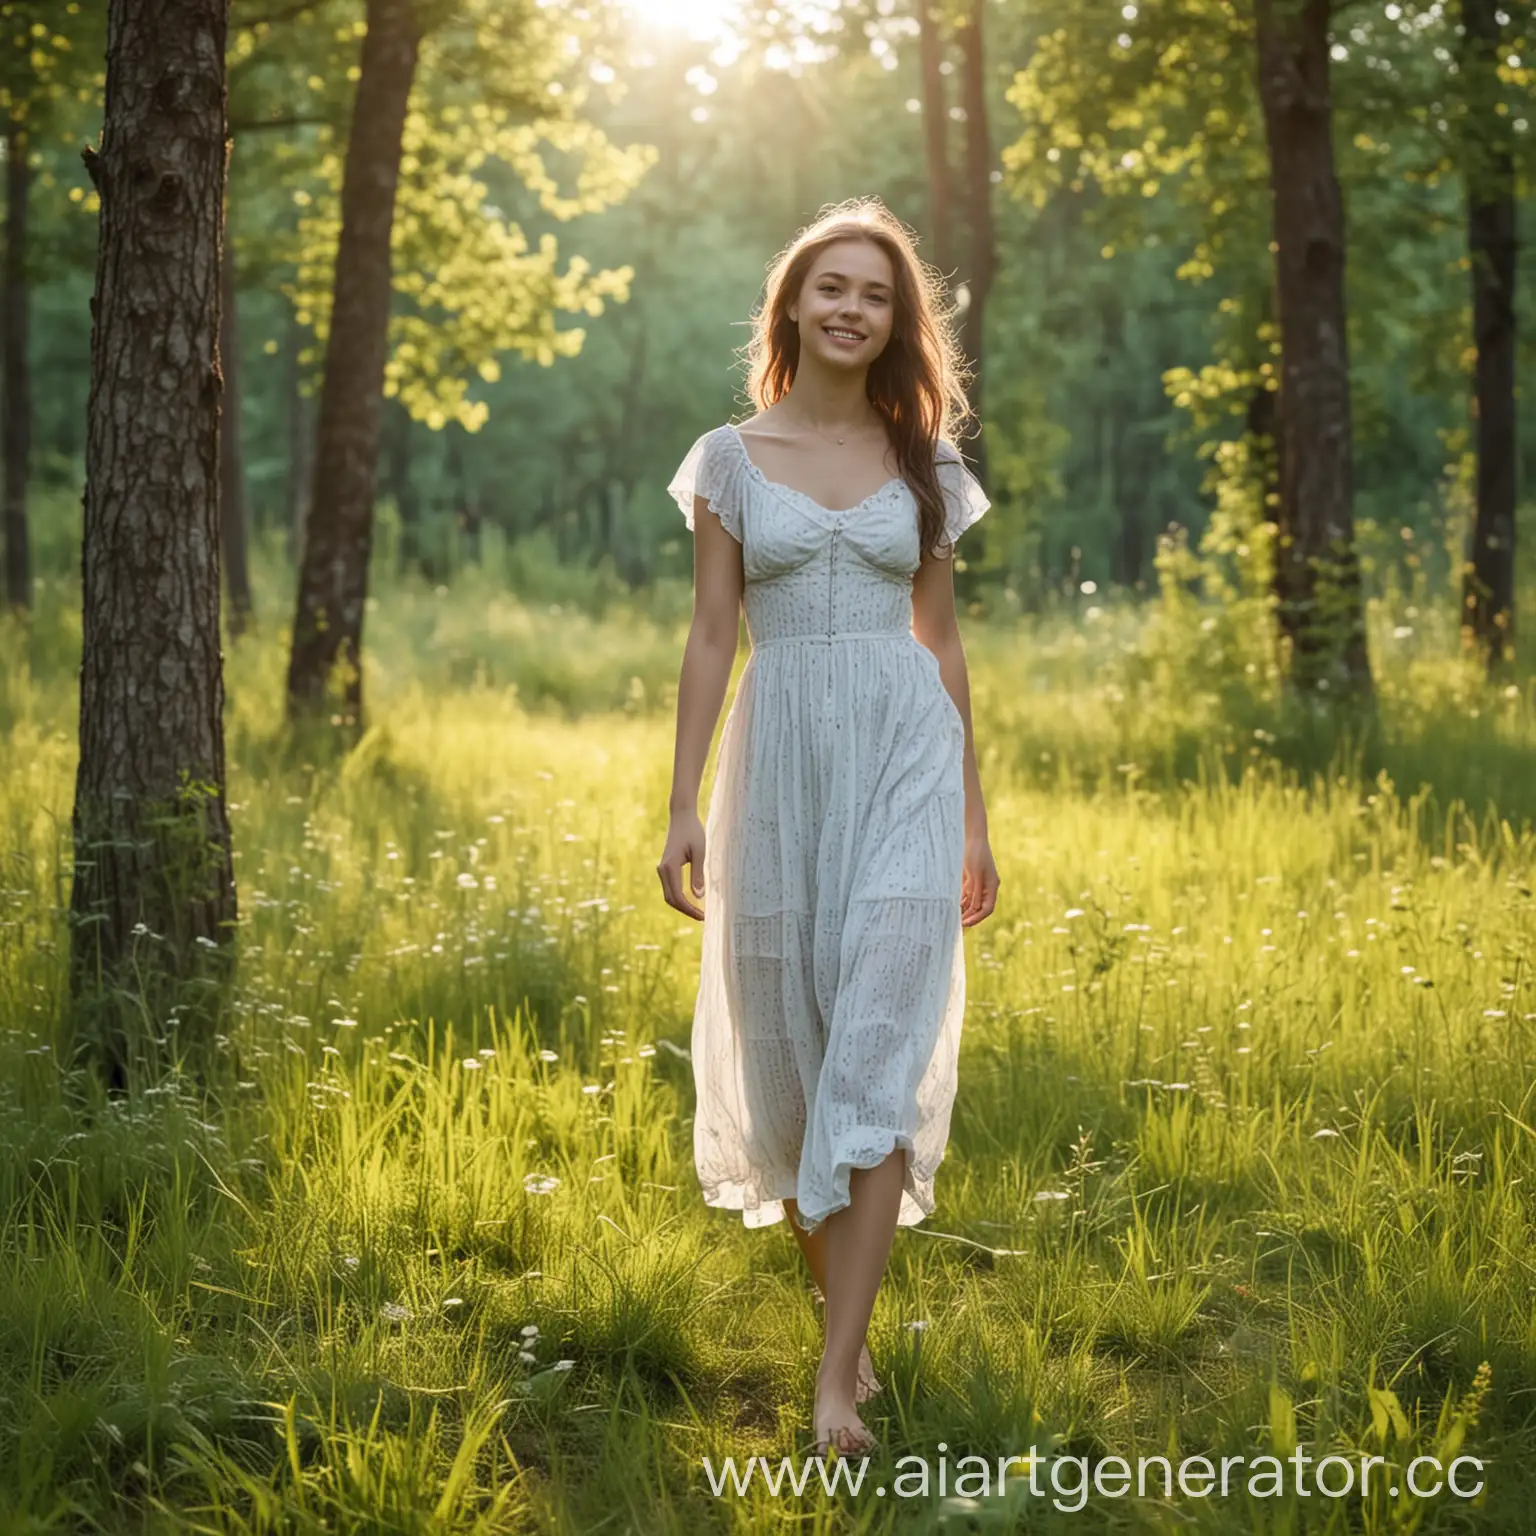 девушка  24 лет гуляет на поляне рядом с лесом  летним  утром. у нее прямая осанка и мягкая улыбка